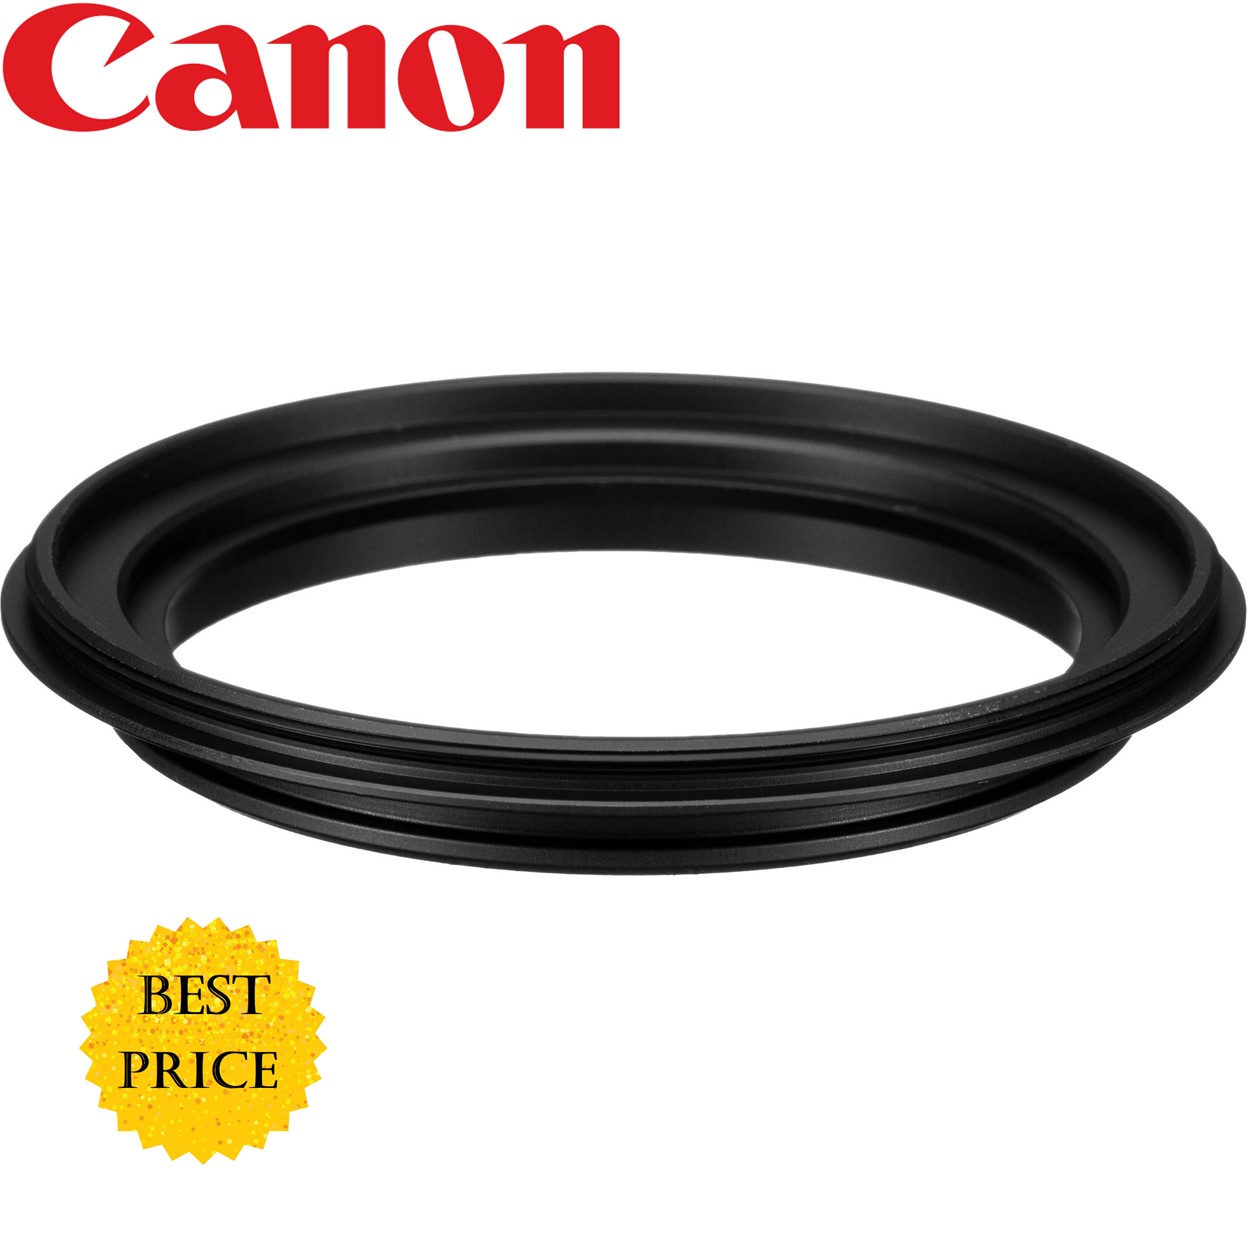 Canon ML-3 Macrolite Ring Flash Adapter for 72mm Filter Thread Lenses